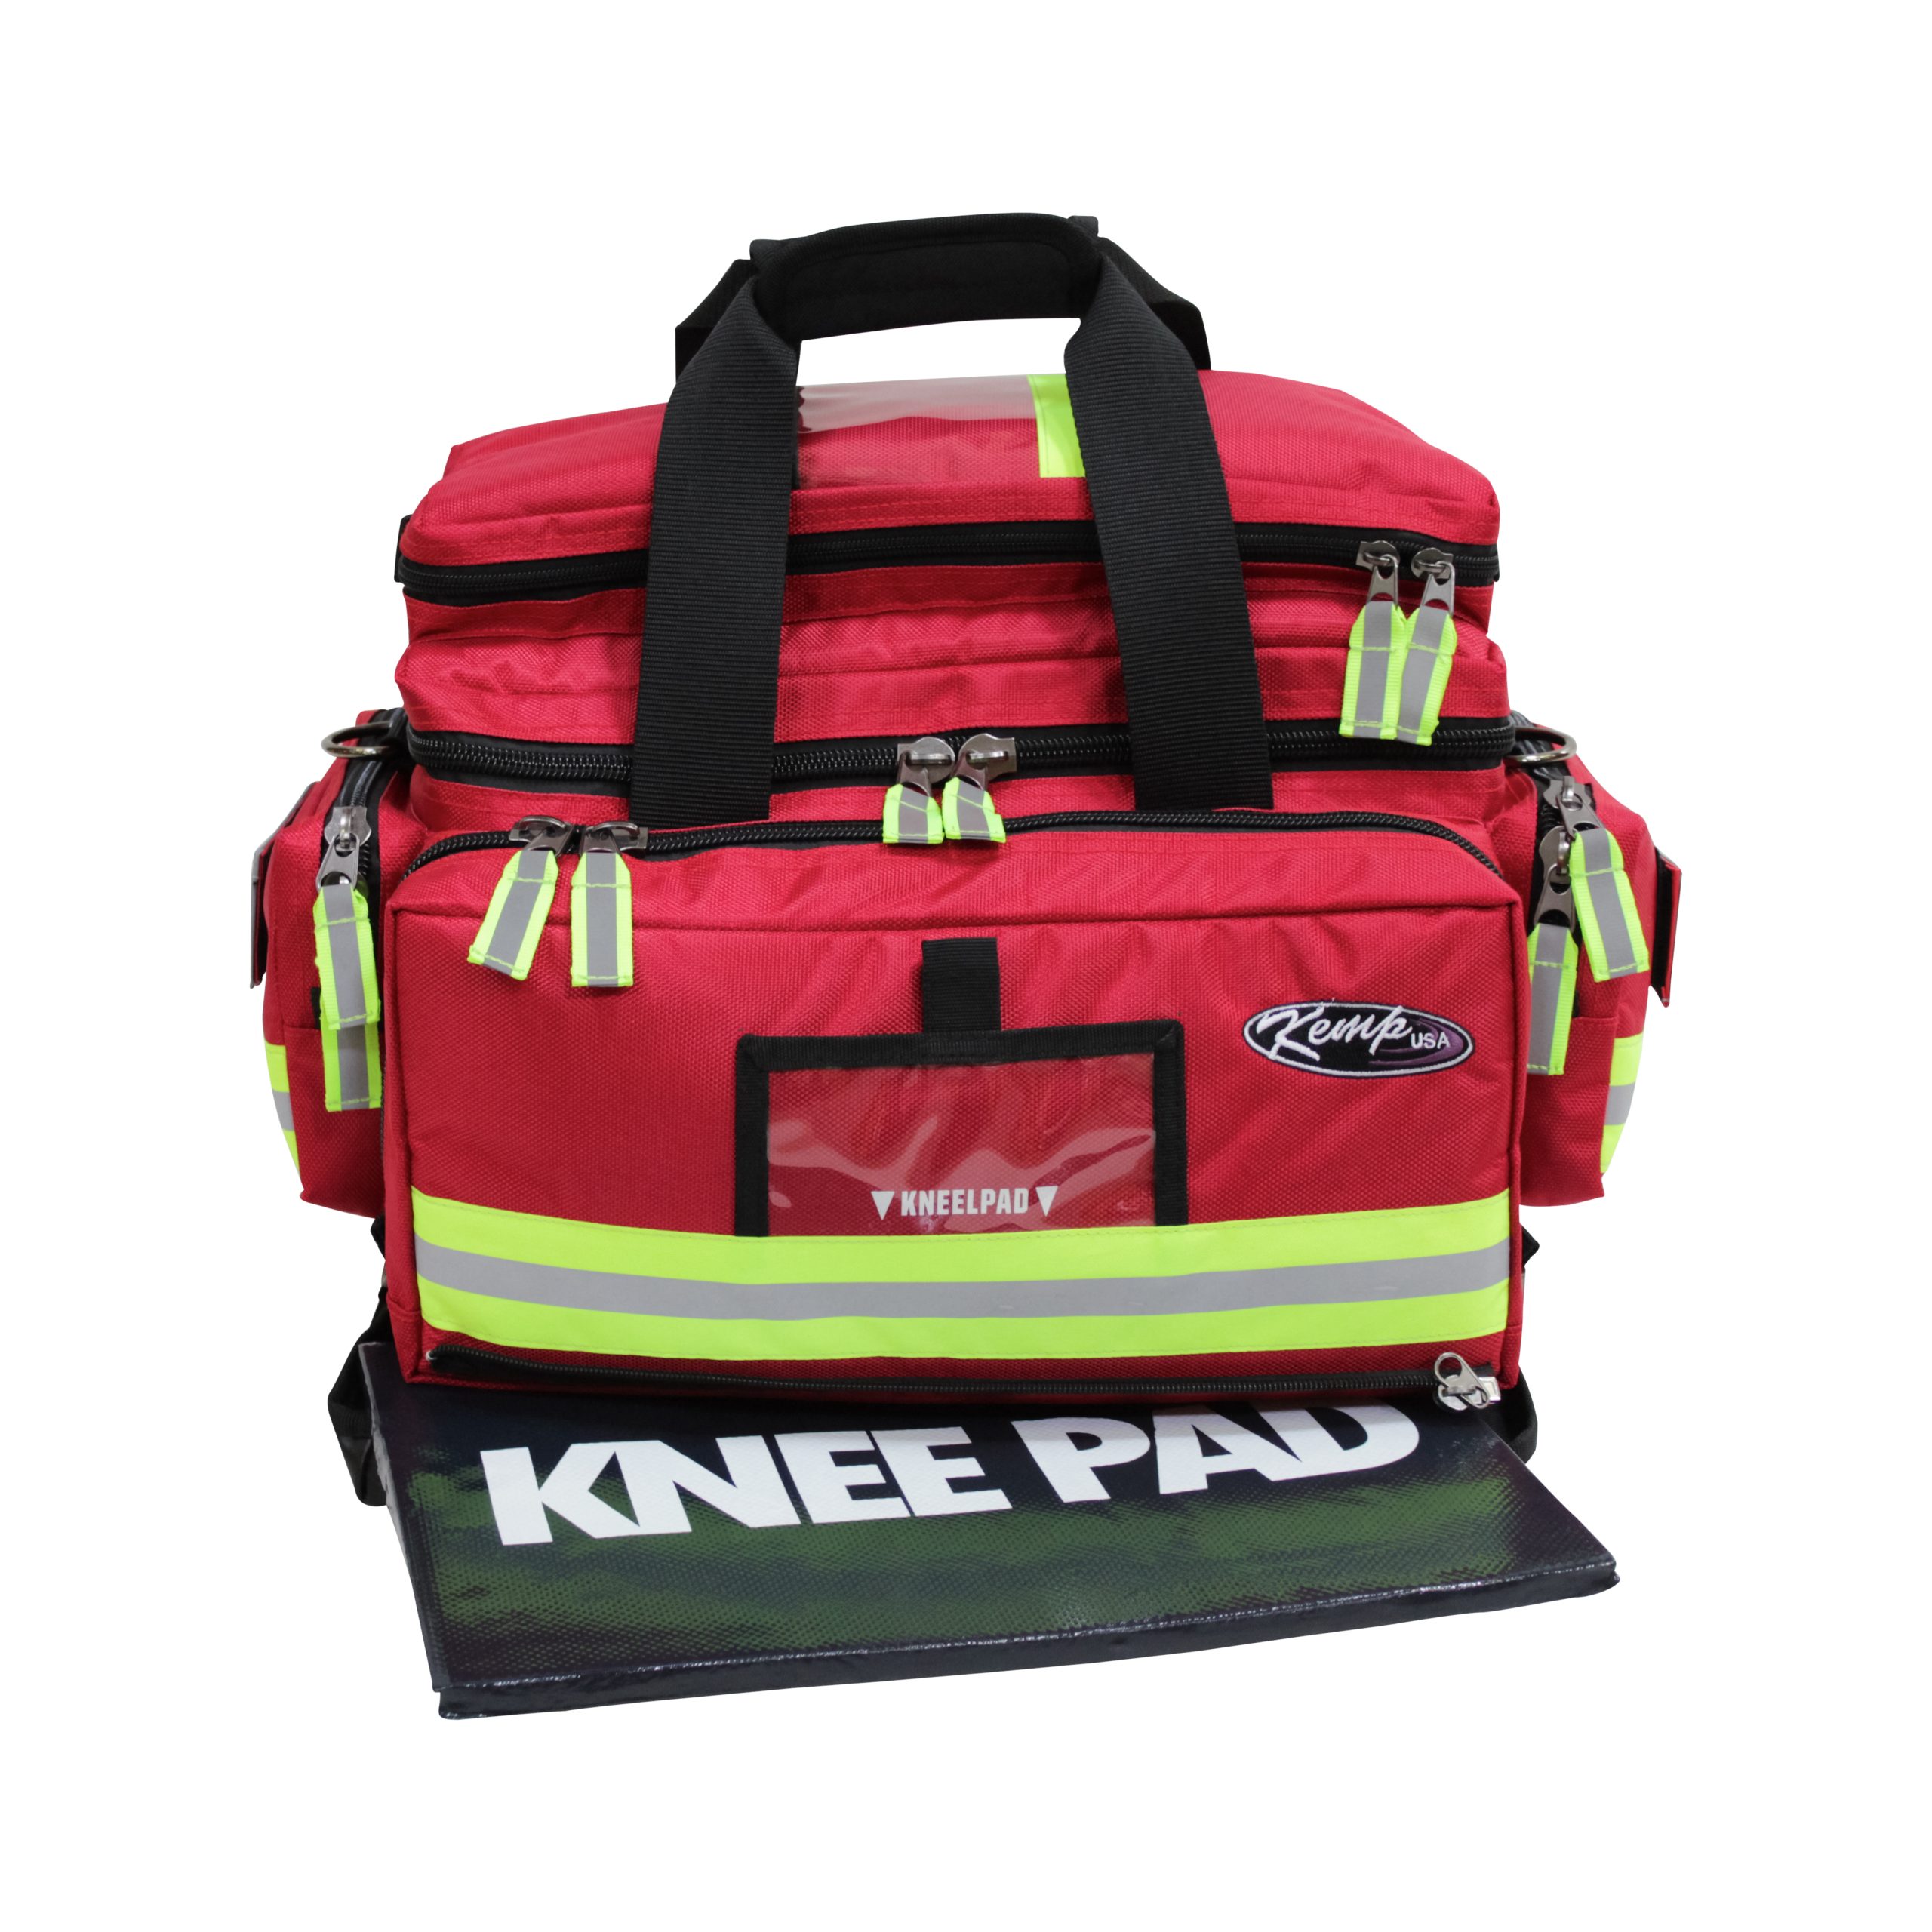 Kemp First Aid Bag